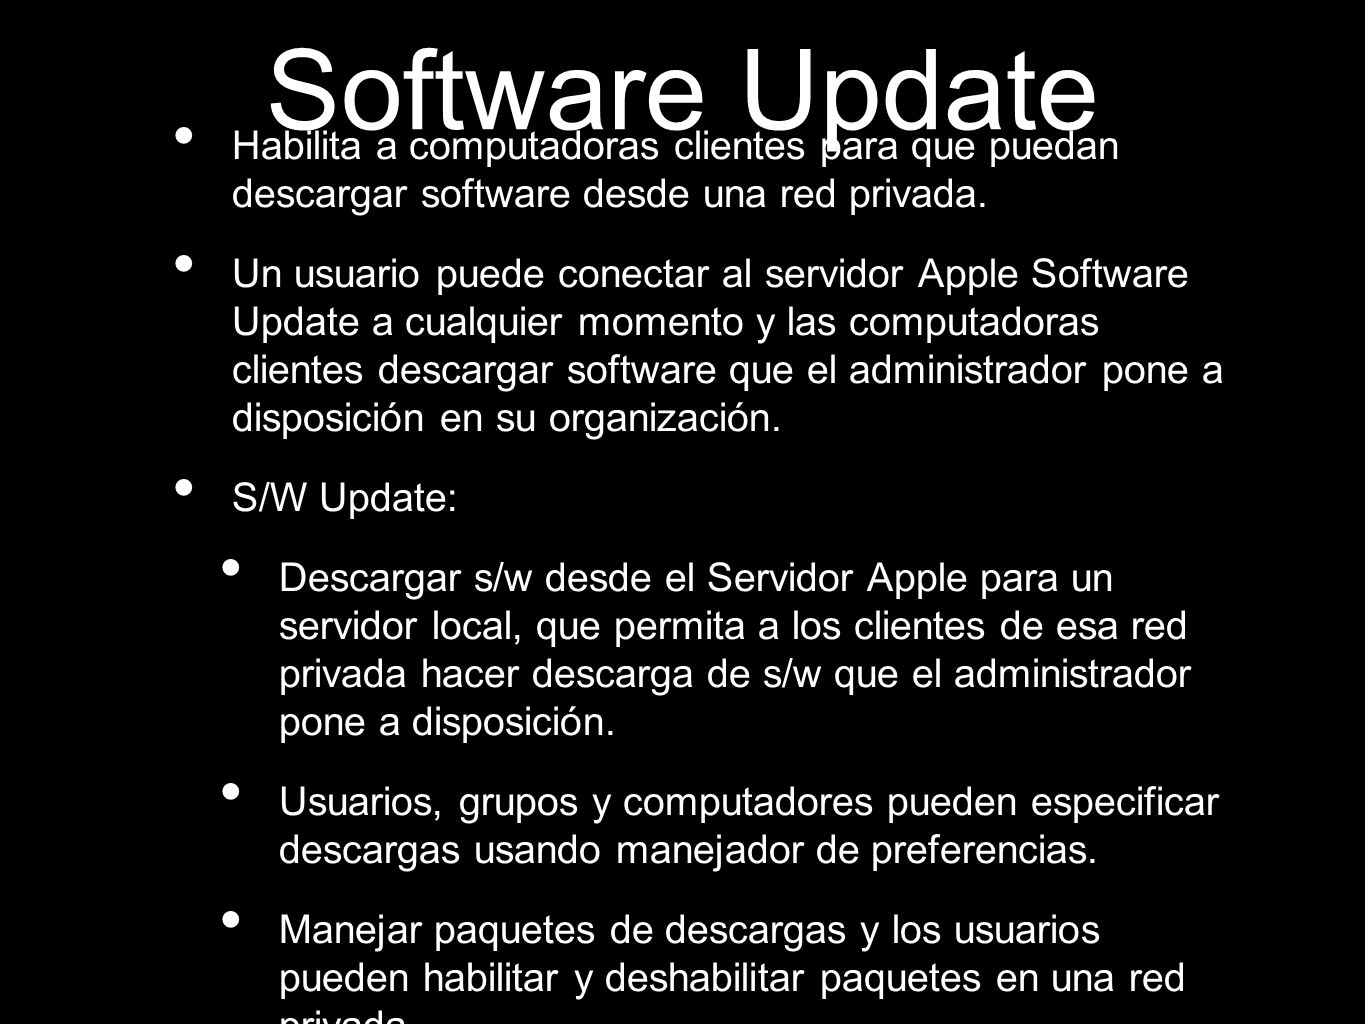 Software Update Habilita a computadoras clientes para que puedan descargar software desde una red privada.